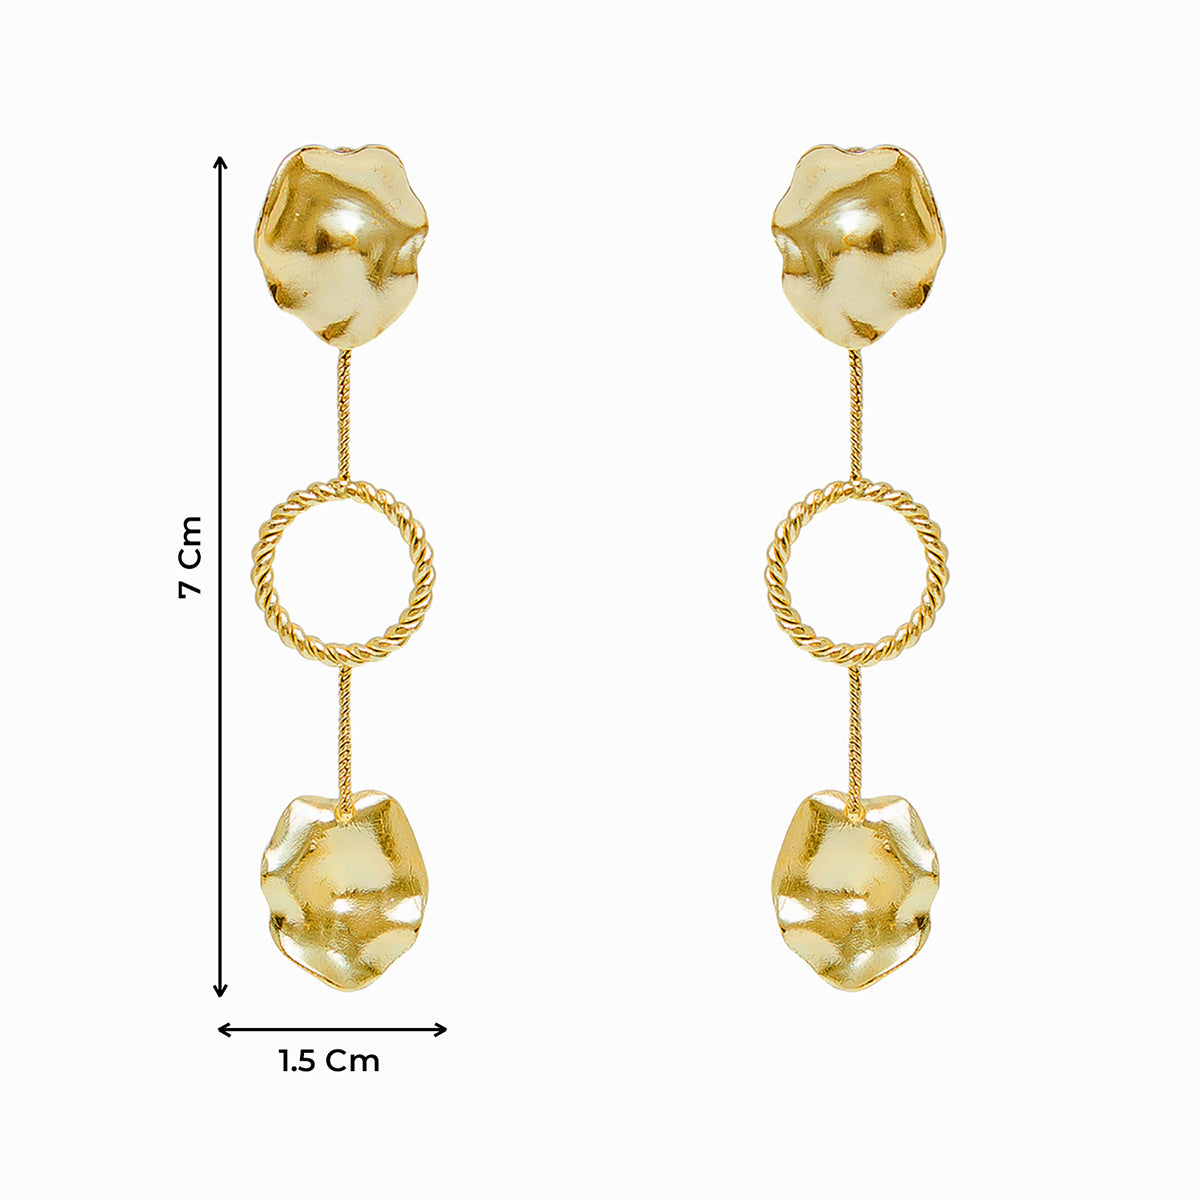 Contemporary Hammered Gold Disc Festive Dangler Earrings